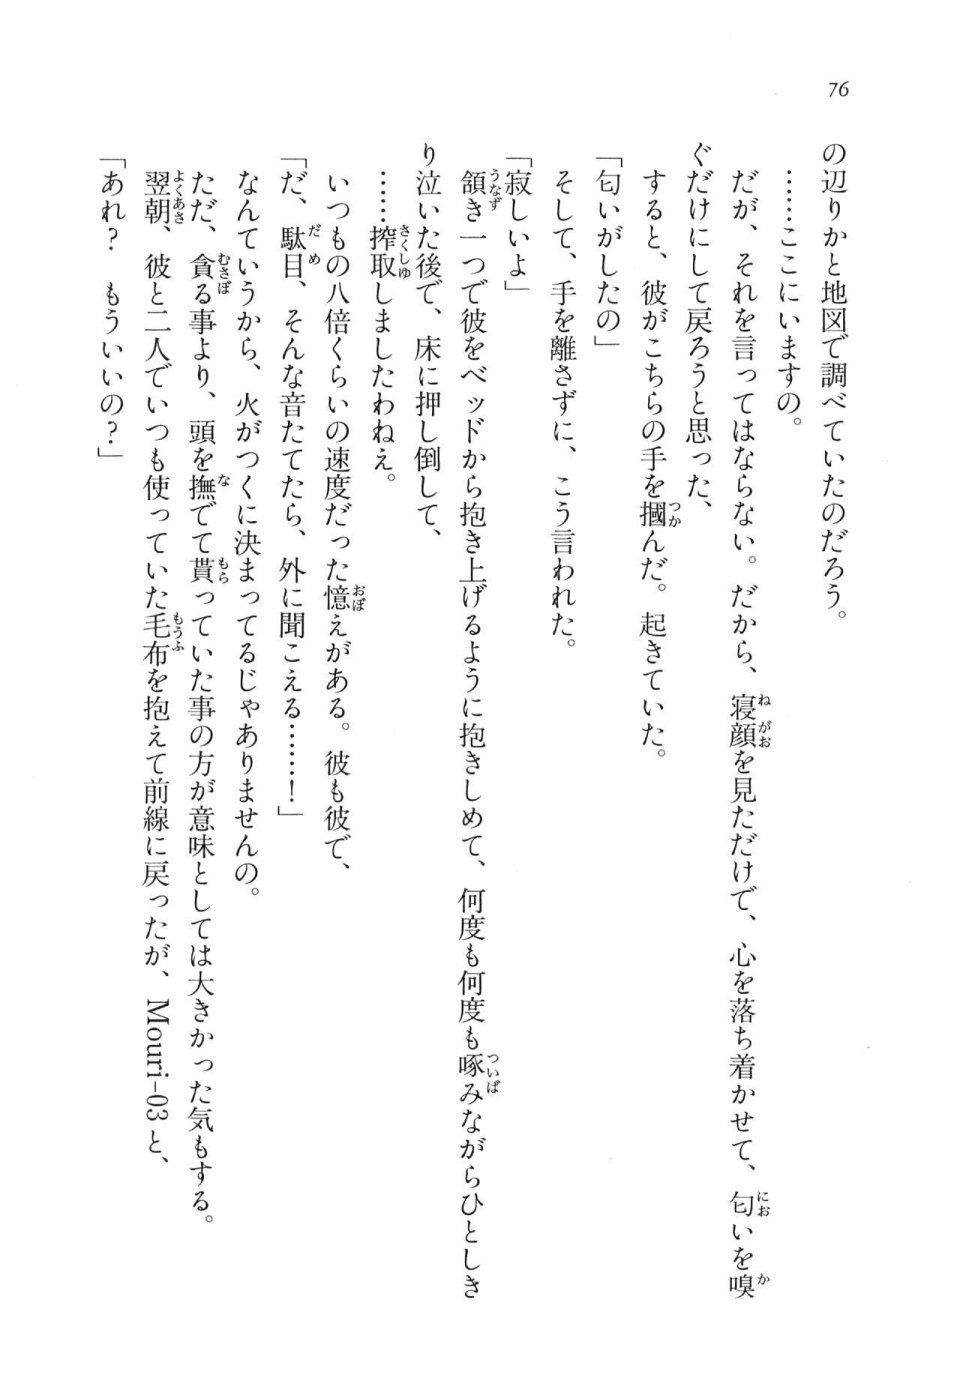 Kyoukai Senjou no Horizon LN Vol 11(5A) - Photo #76